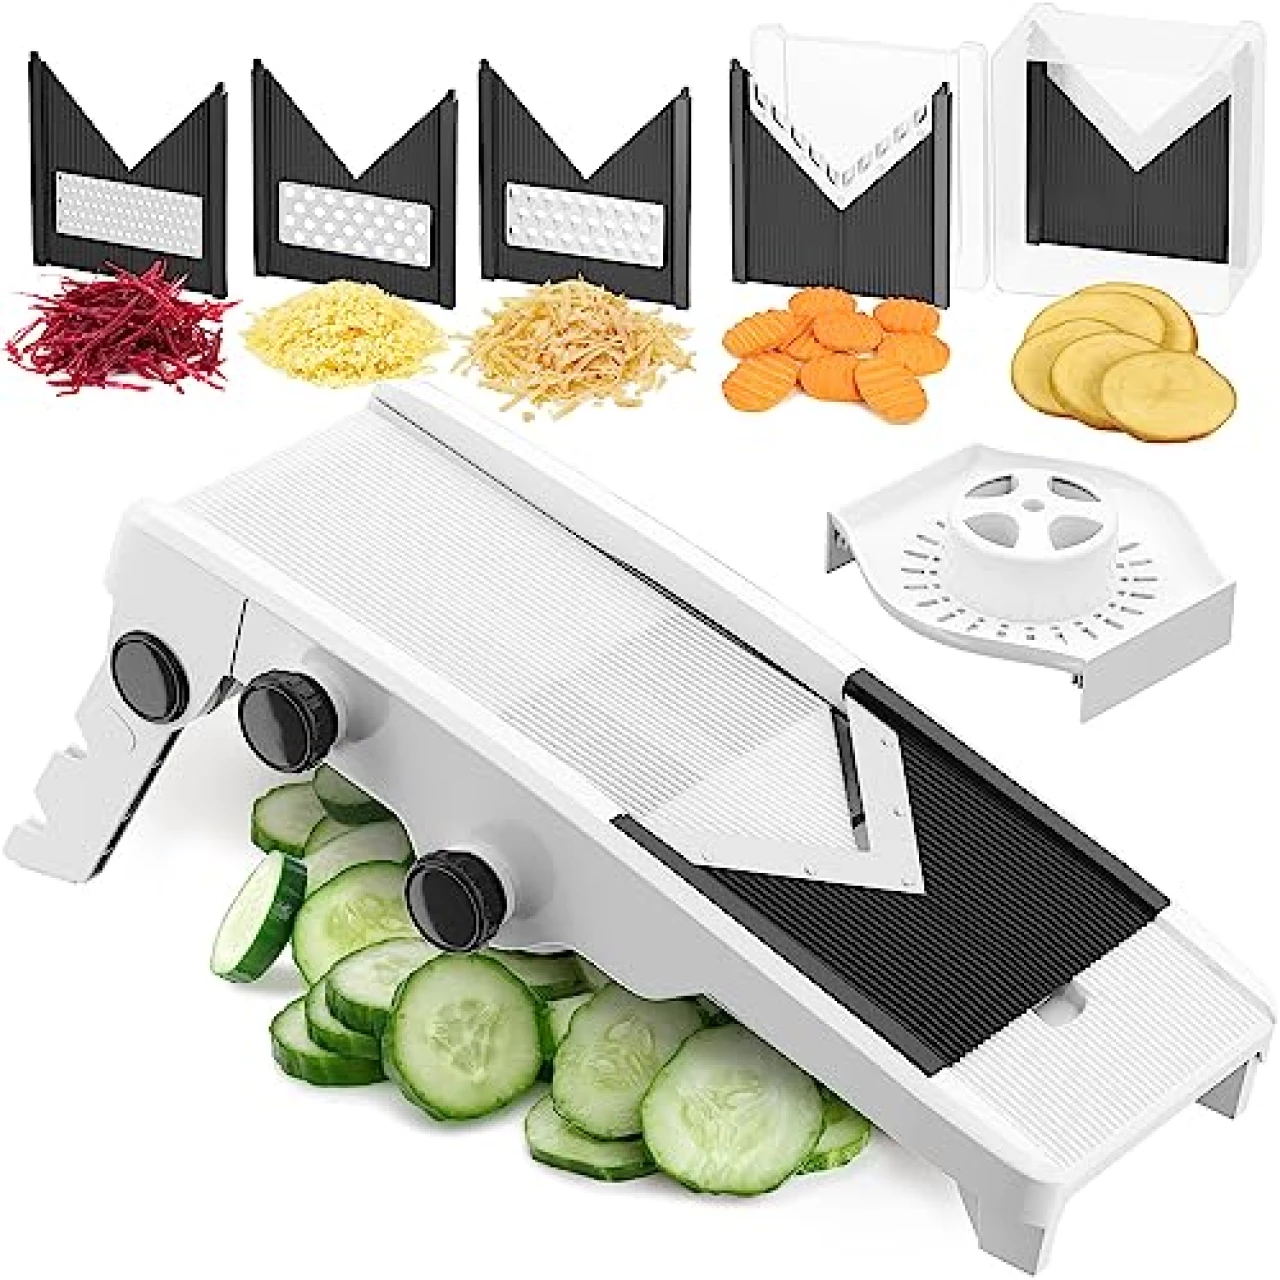 Mueller V-Pro 5-Blade Mandoline Slicer for Kitchen, Adjustable with Foldable Stand